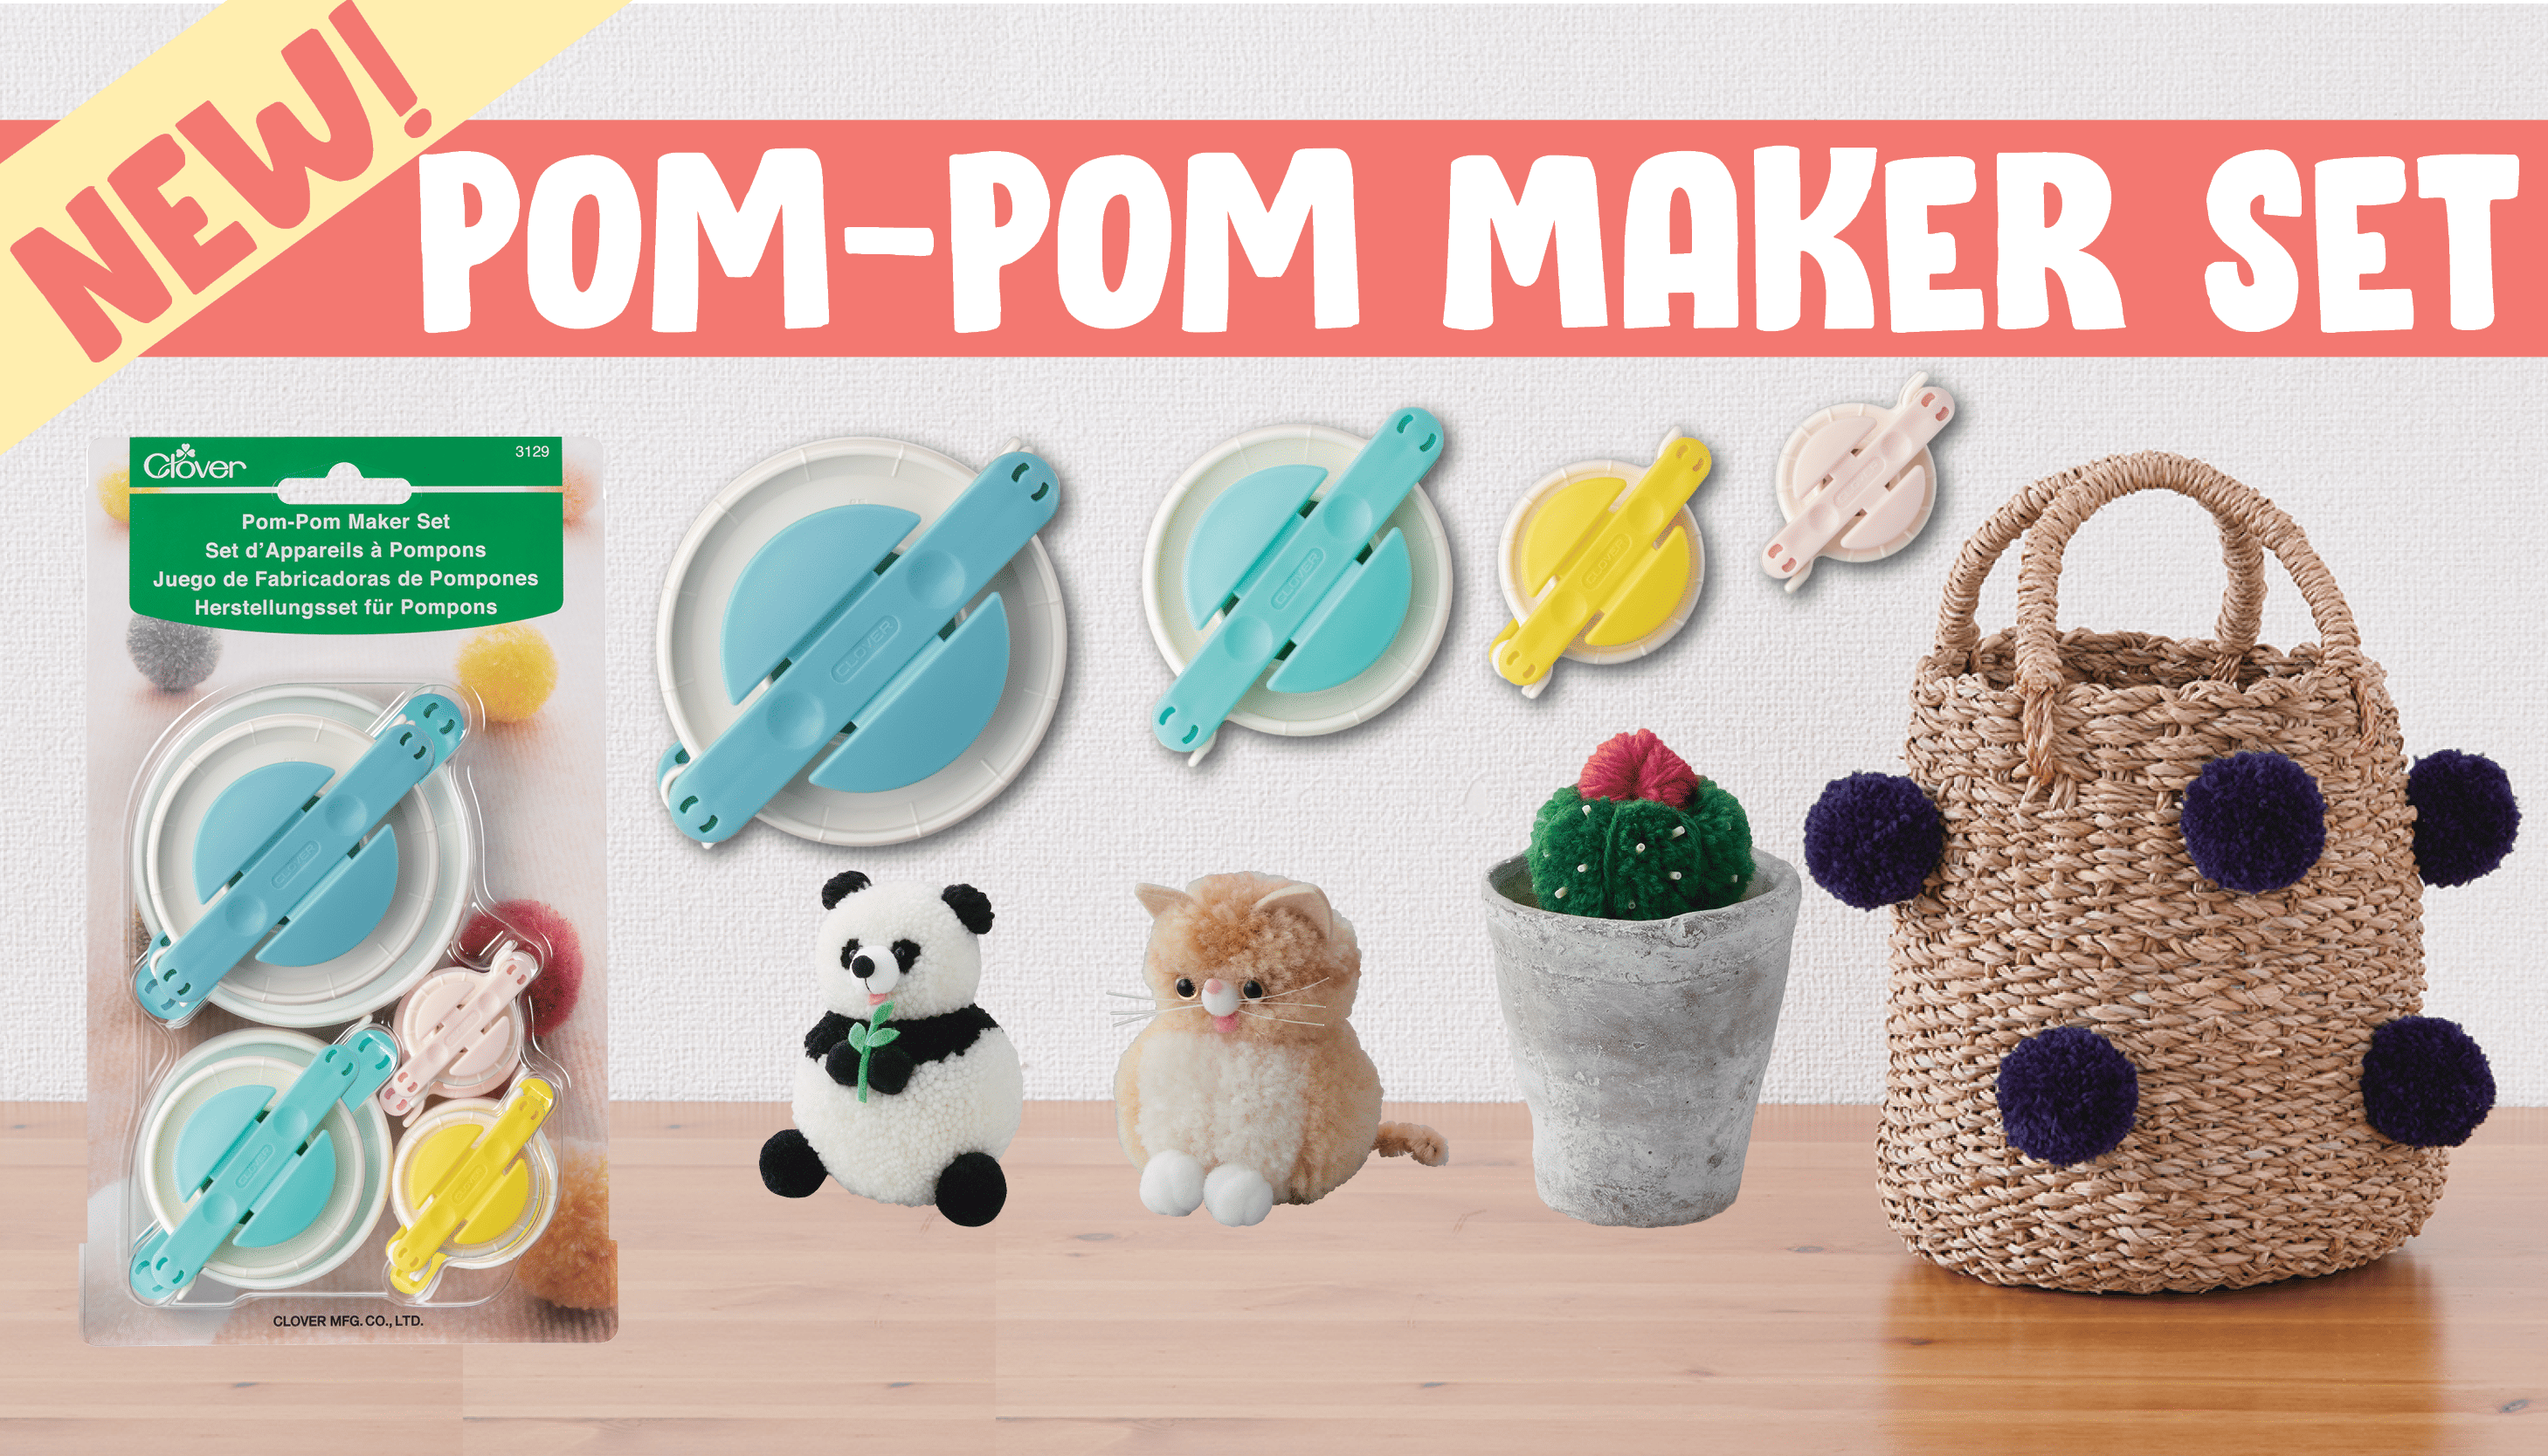 Clover Pom-Pom Maker 